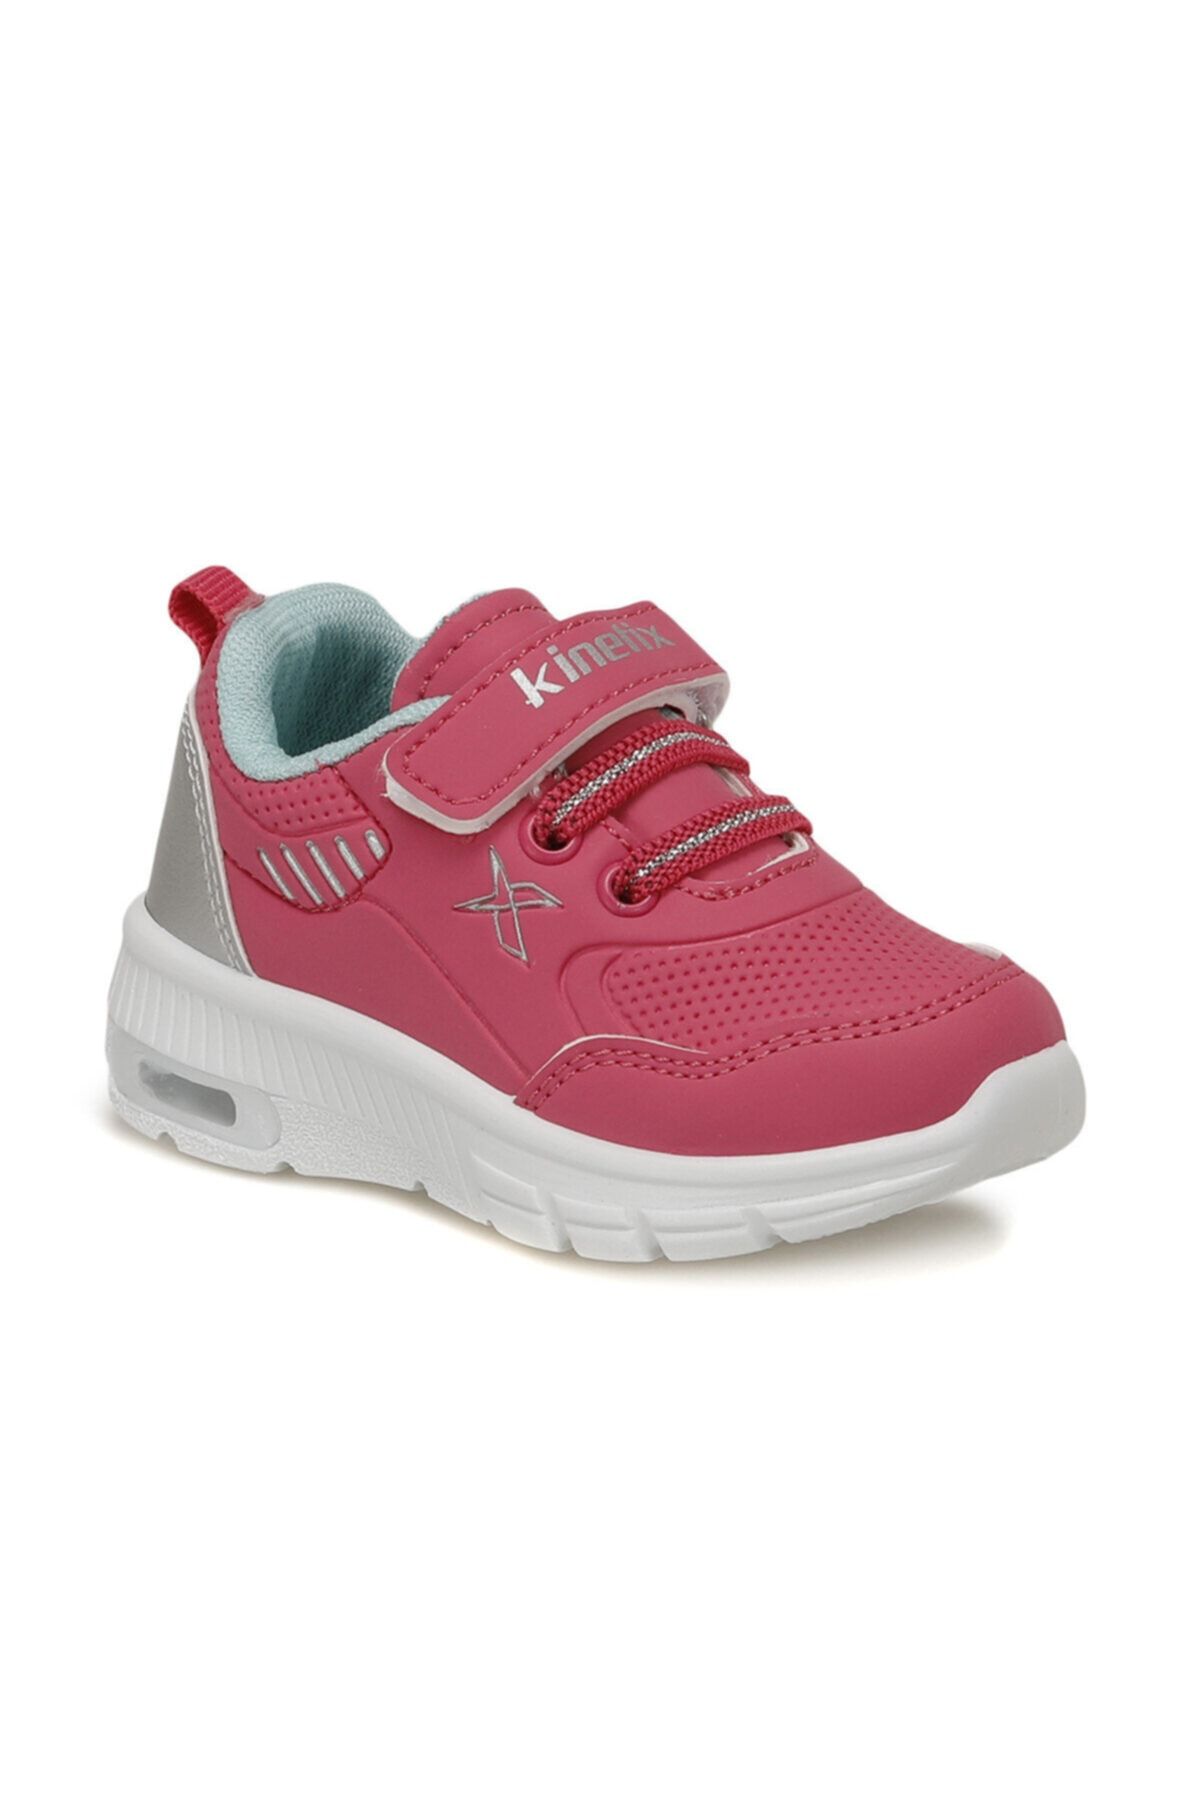 Kinetix WATSON Fuşya Kız Çocuk Yürüyüş Ayakkabısı 100543790